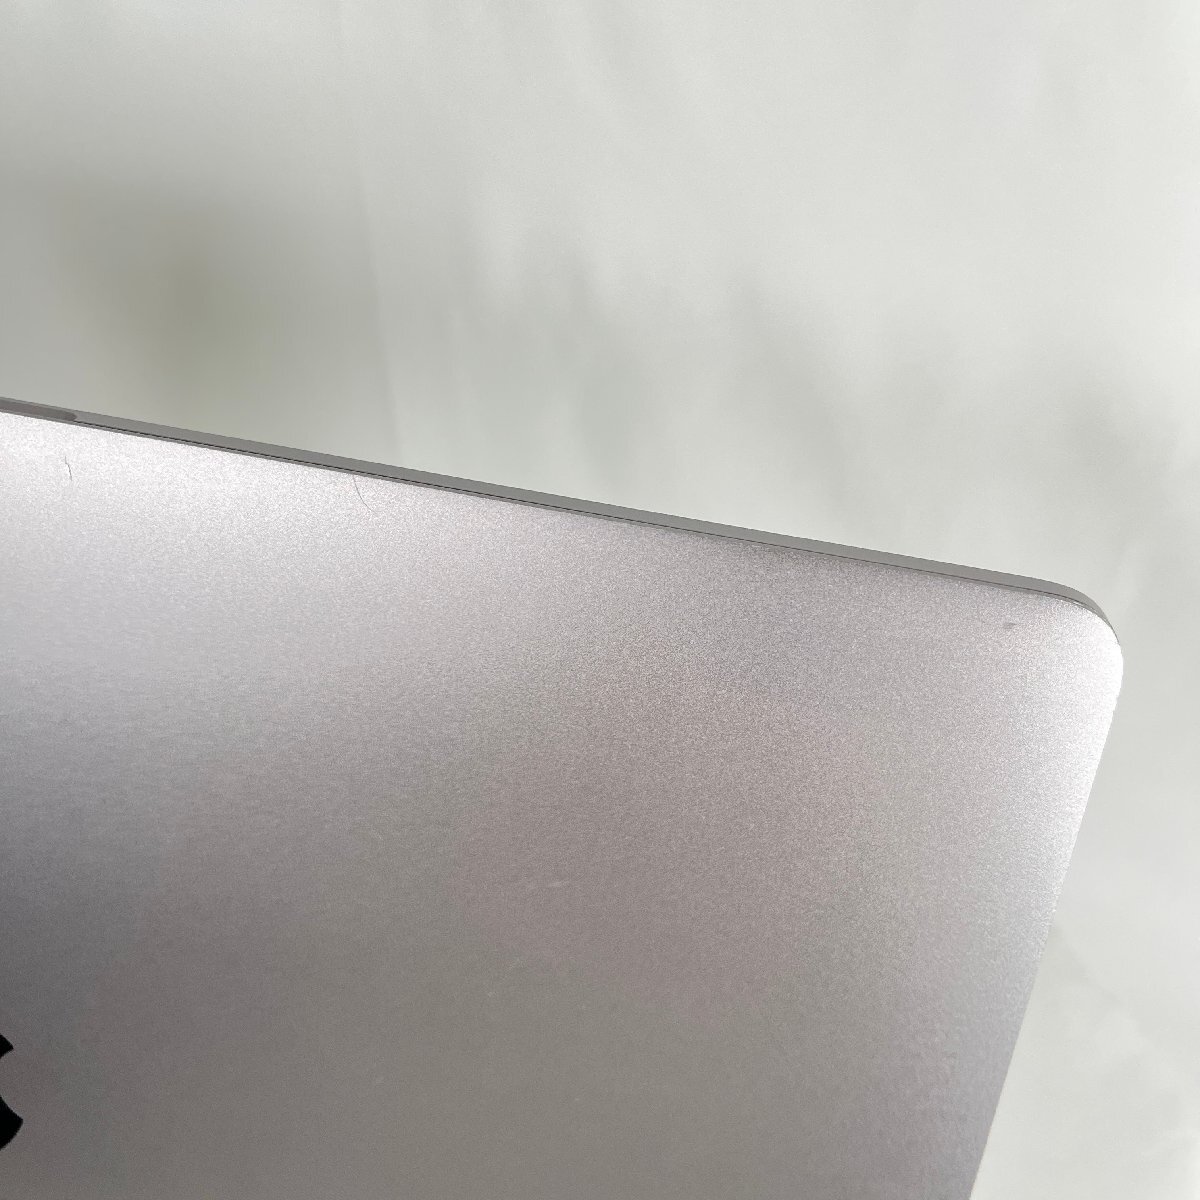 ★１円スタートお得！★MacBookPro 15-inch 2018 Apple 16GB 256GB スペースグレイ アップル 充放電回数 252回【中古】USキーボード_天板に傷やシール跡あり